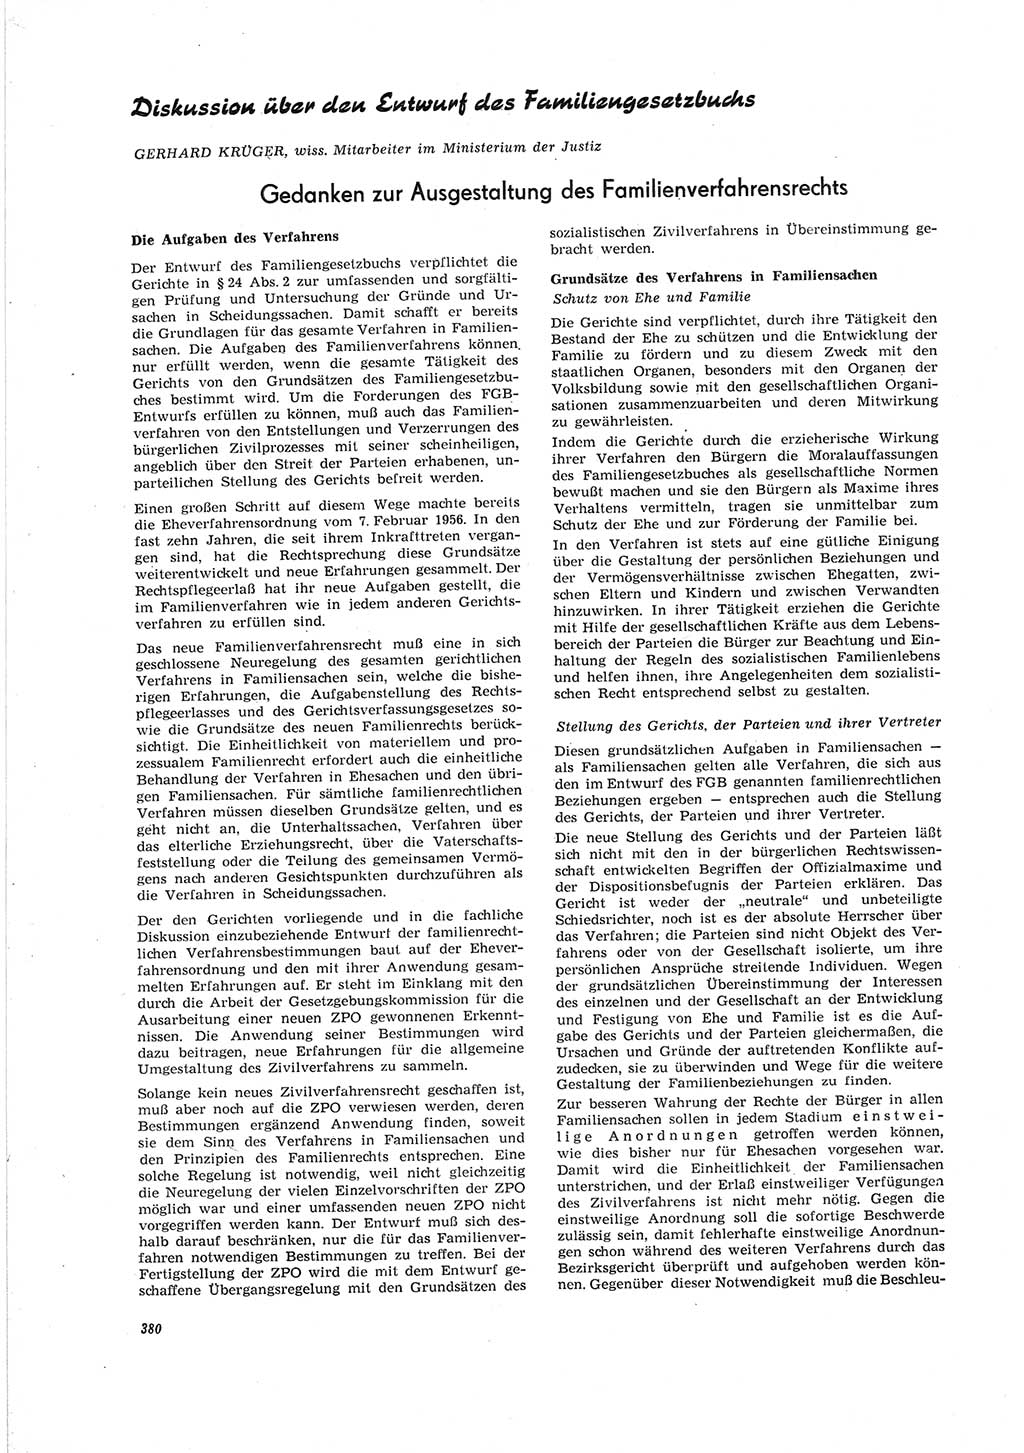 Neue Justiz (NJ), Zeitschrift für Recht und Rechtswissenschaft [Deutsche Demokratische Republik (DDR)], 19. Jahrgang 1965, Seite 380 (NJ DDR 1965, S. 380)